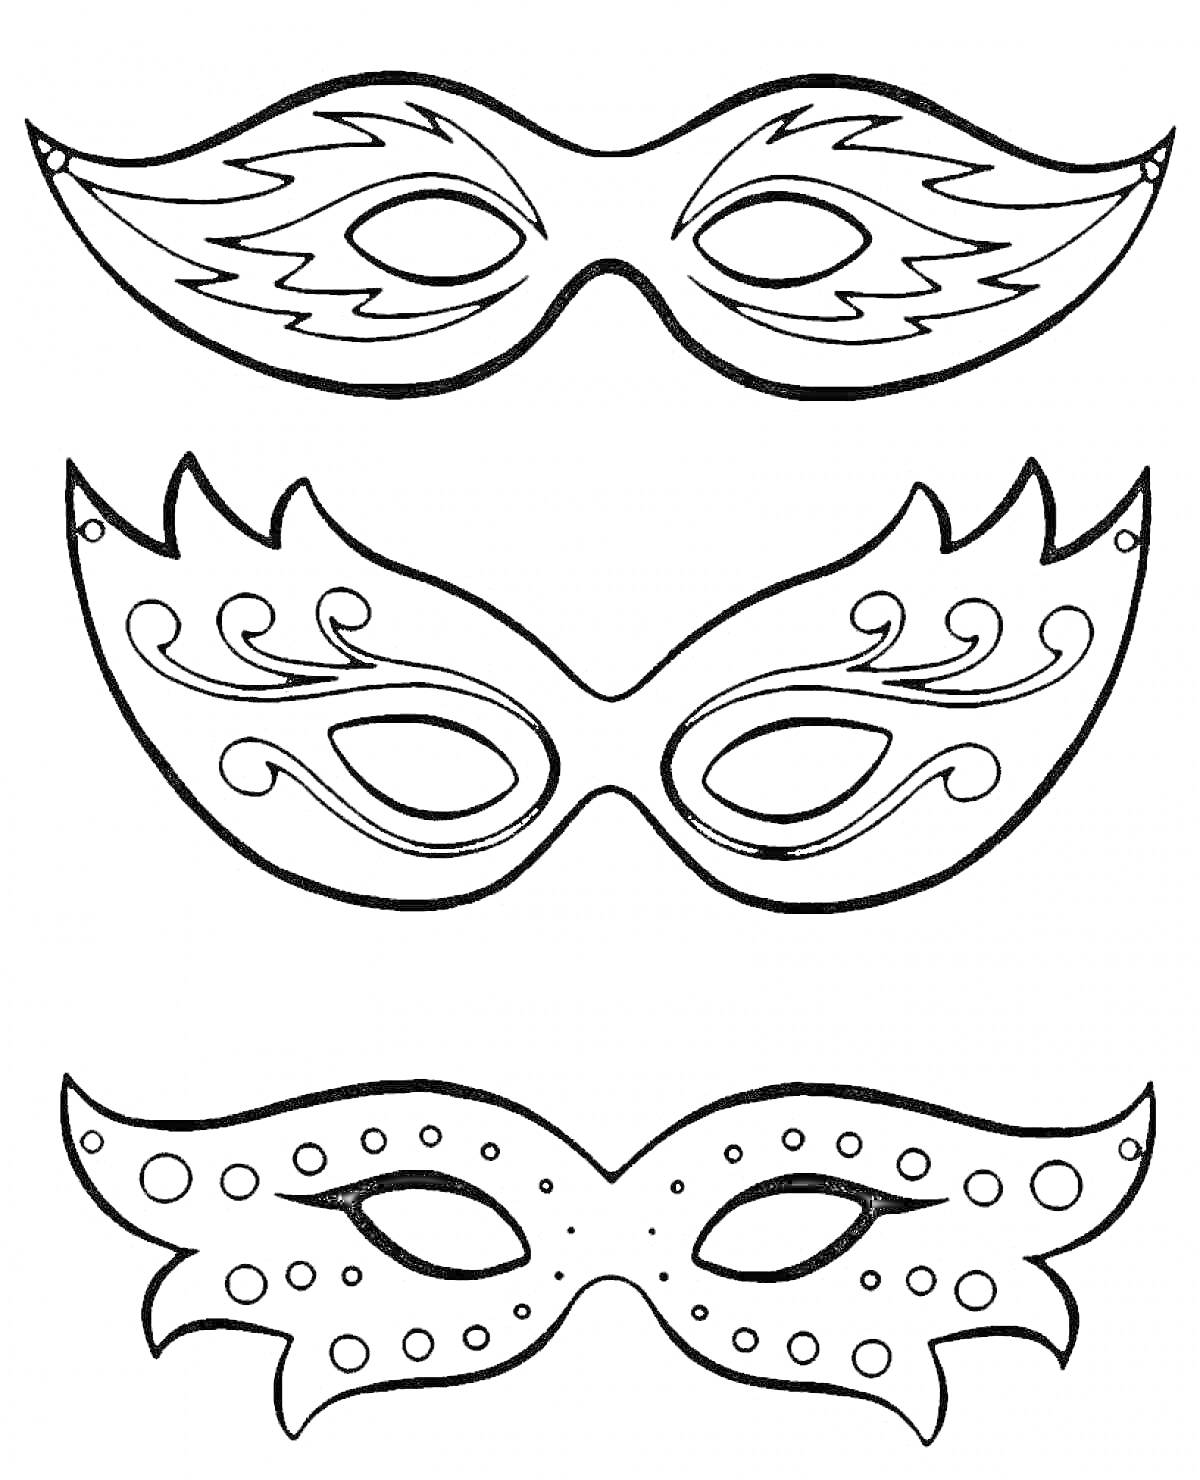 Раскраска Три новогодние маски с различными декоративными элементами (волнистые линии, скрученные завитки, круглые точки)